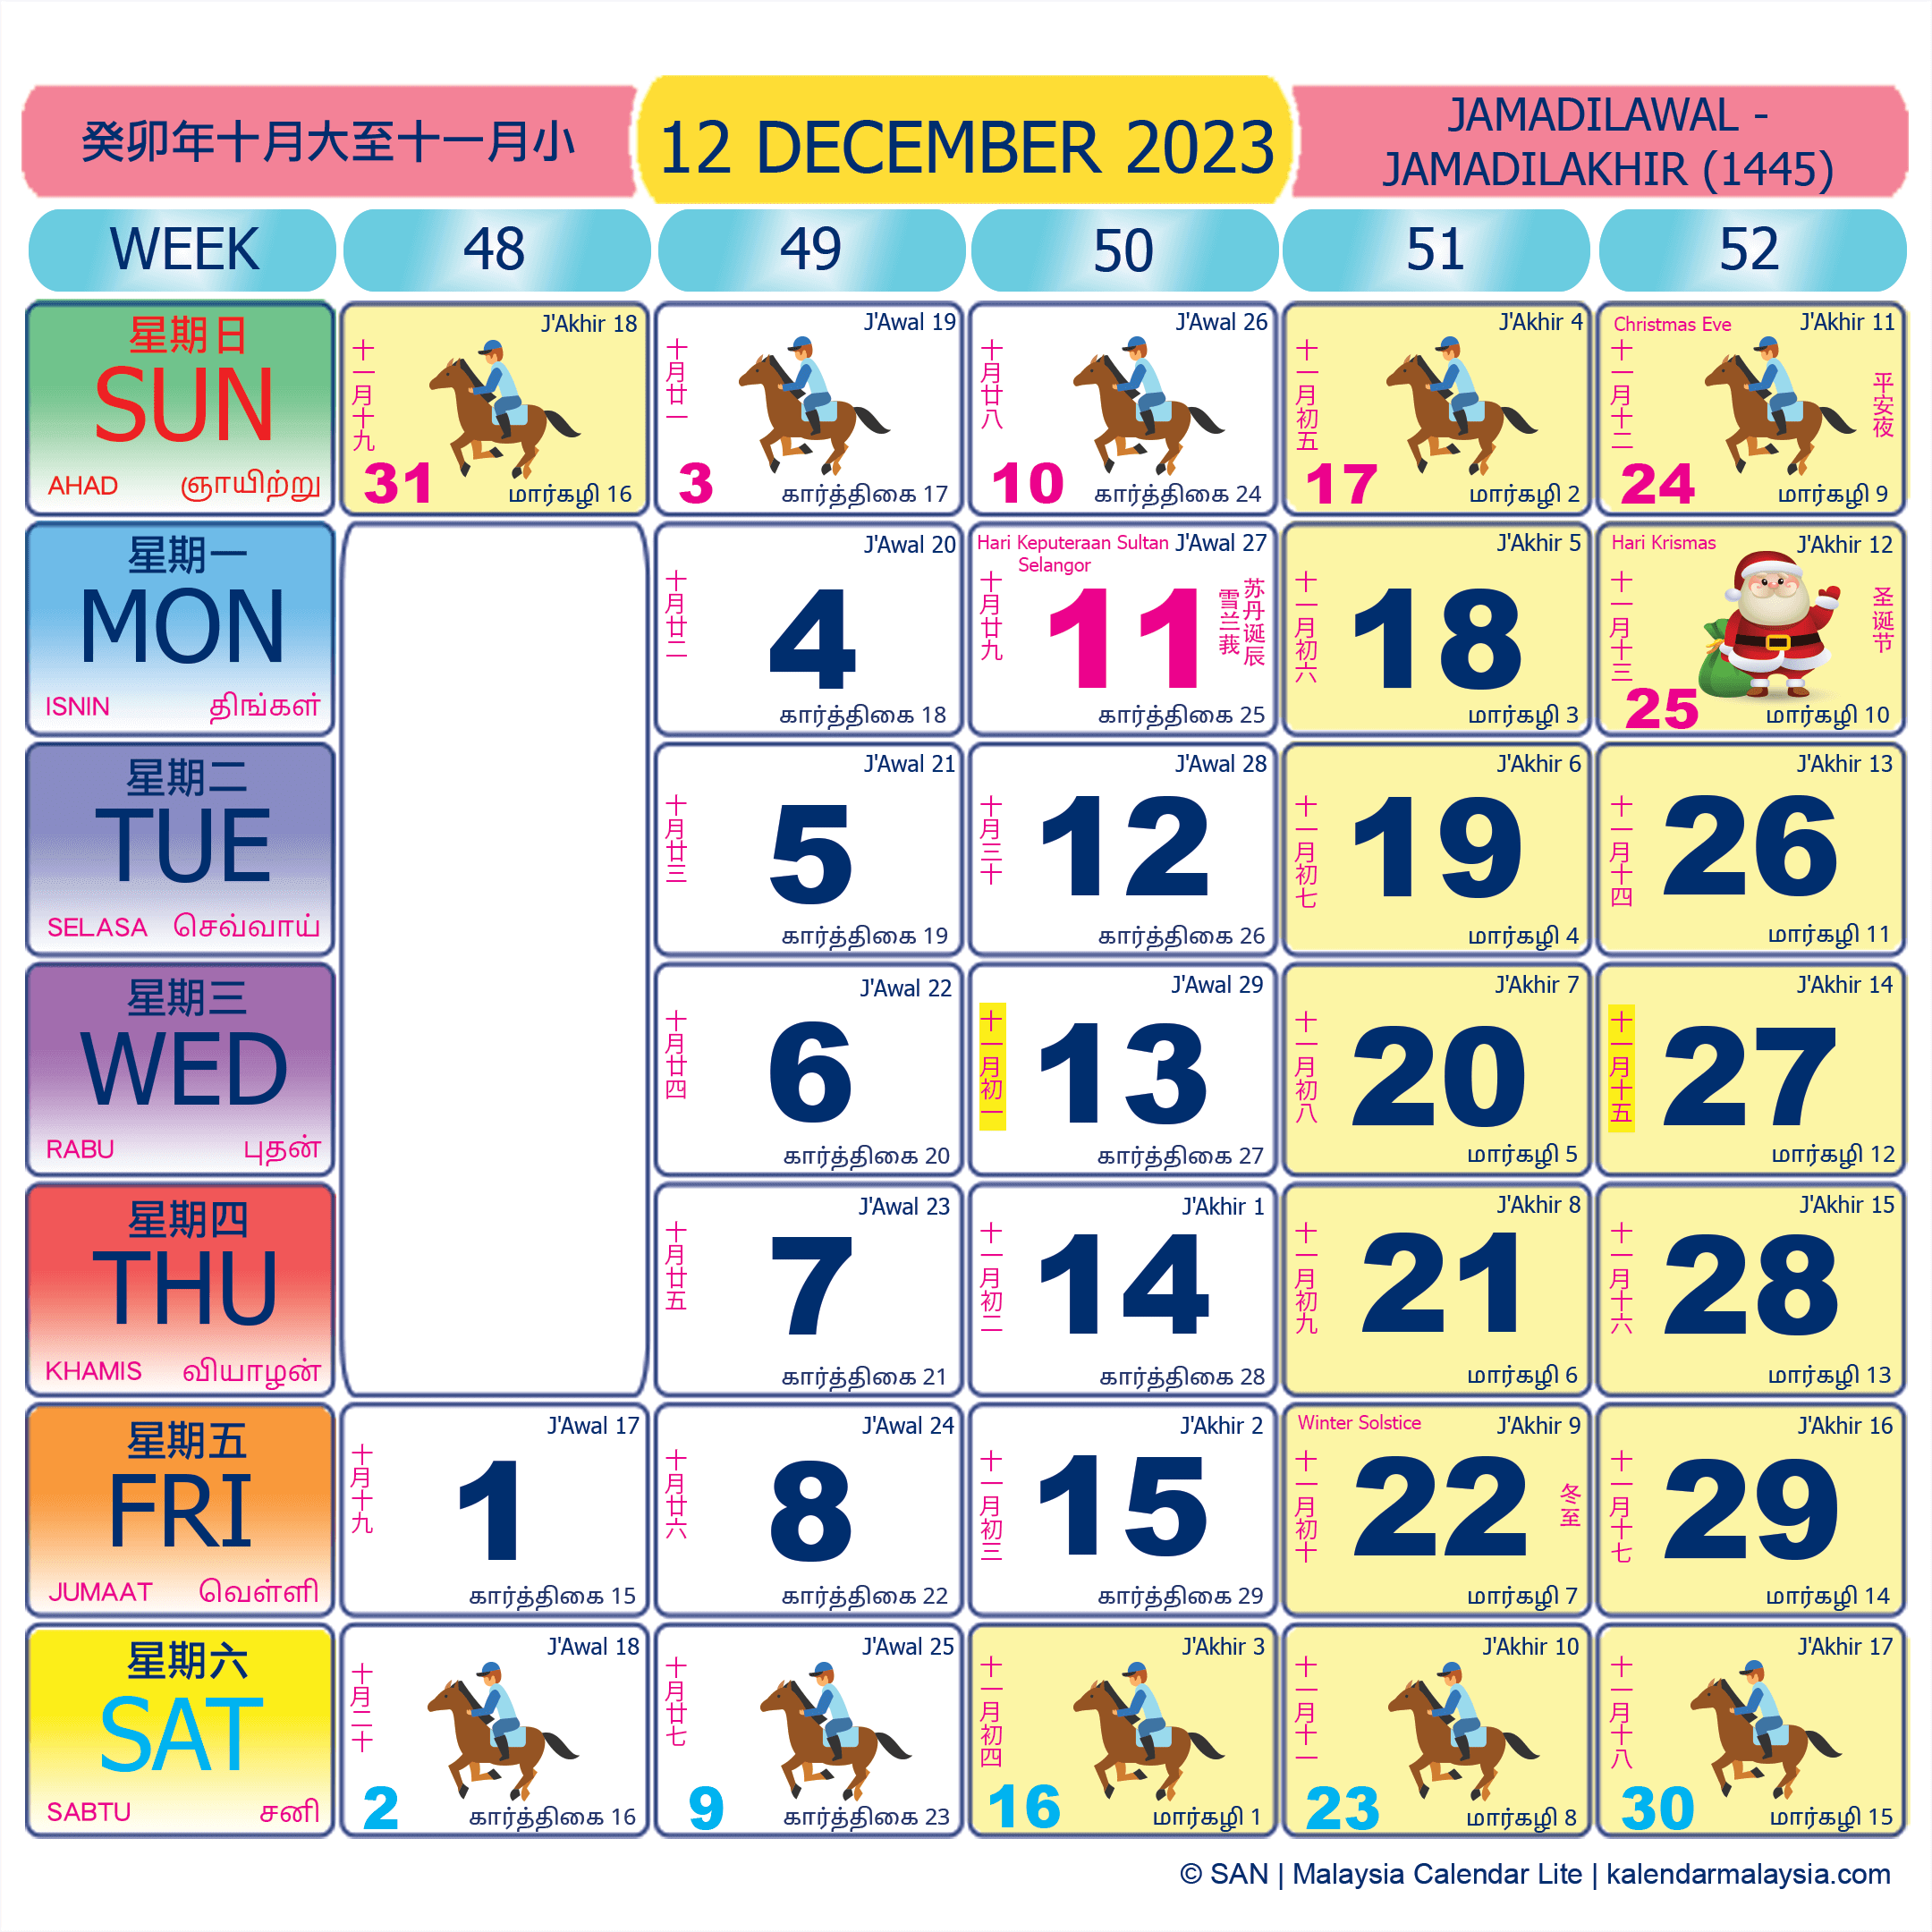 kalendar-kuda-2023-malaysia-senarai-cuti-umum-cuti-sekolah-kalendar-kuda